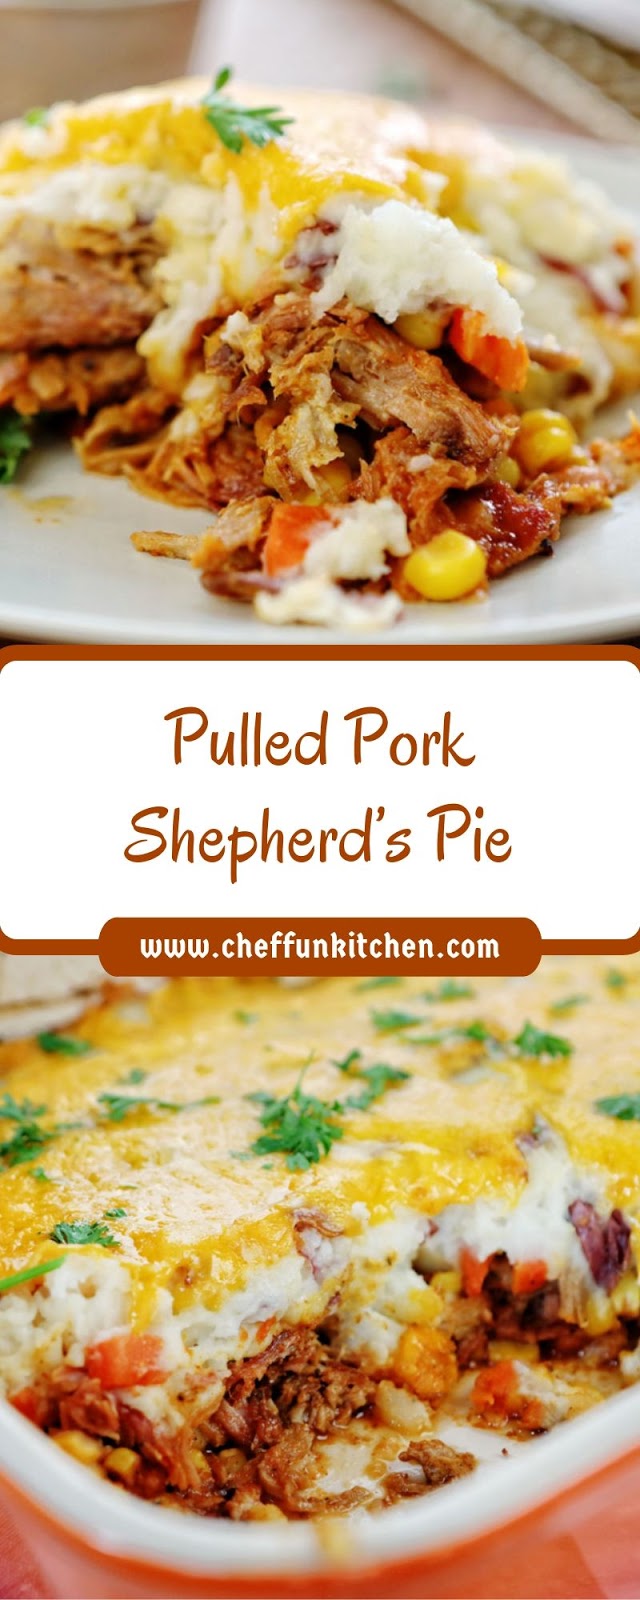 Pulled Pork Shepherd’s Pie